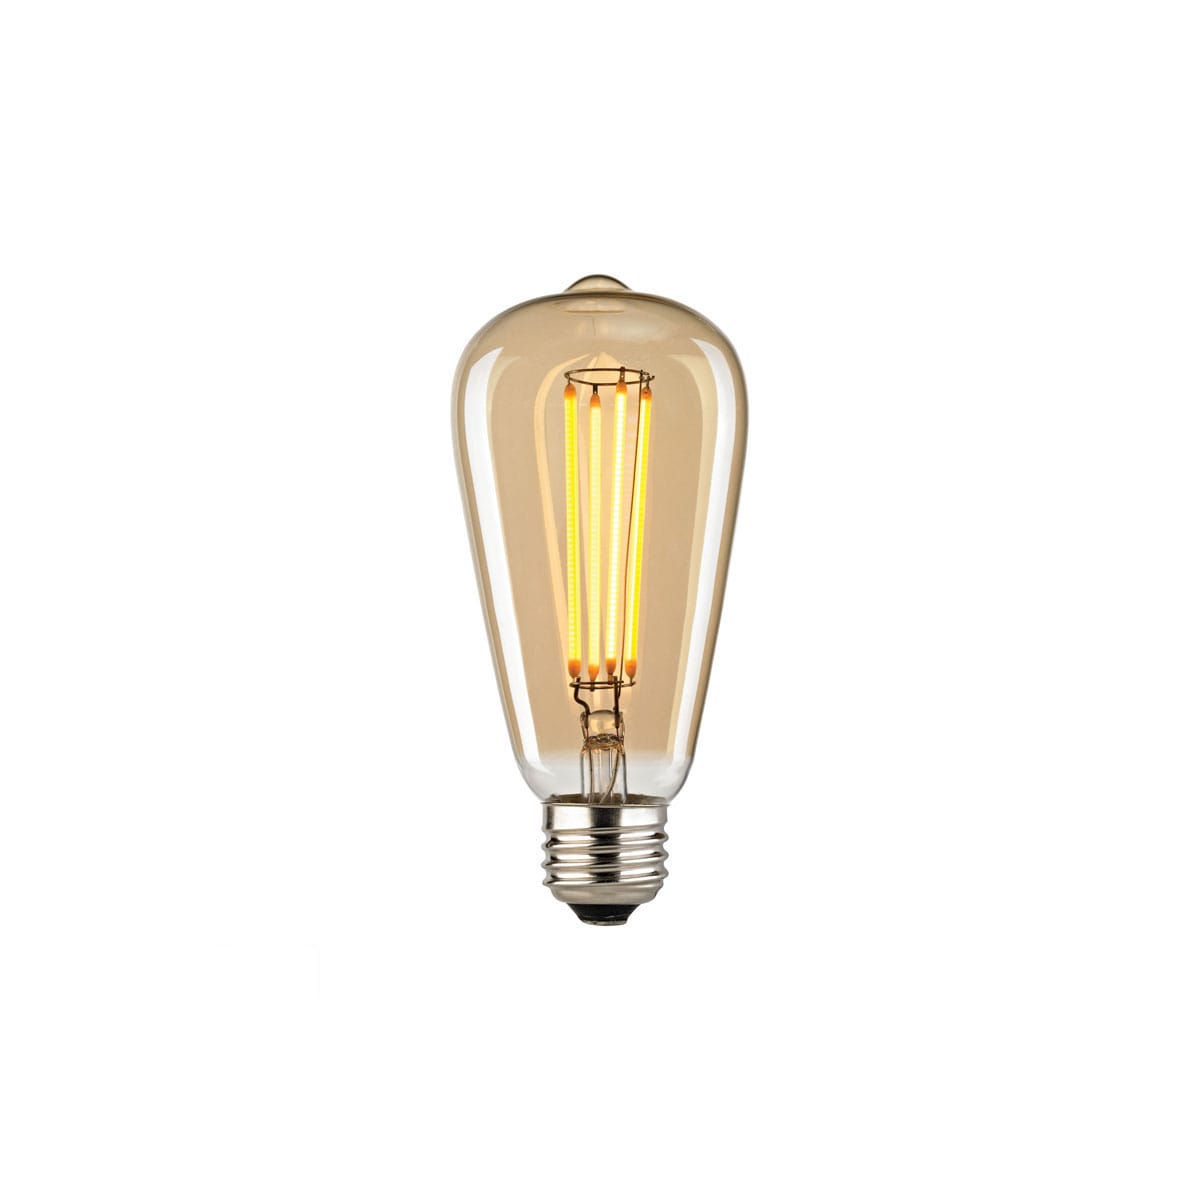 Elk Lighting 1110 4 Watt S14 (E26) Medium LED | Build.com